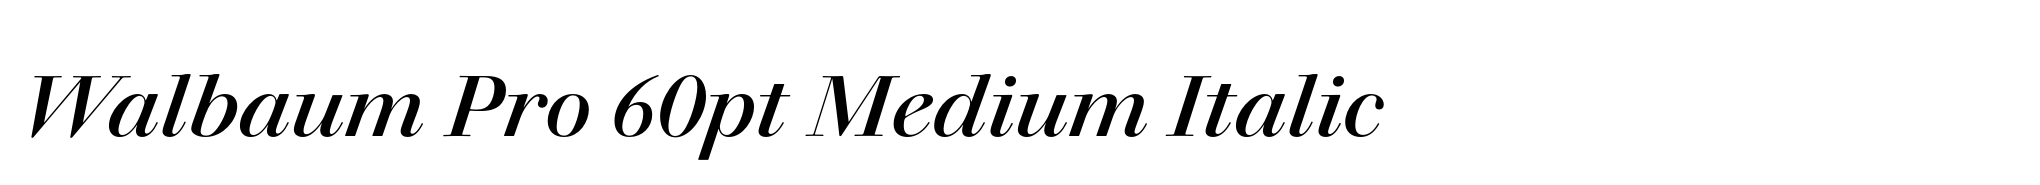 Walbaum Pro 60pt Medium Italic image